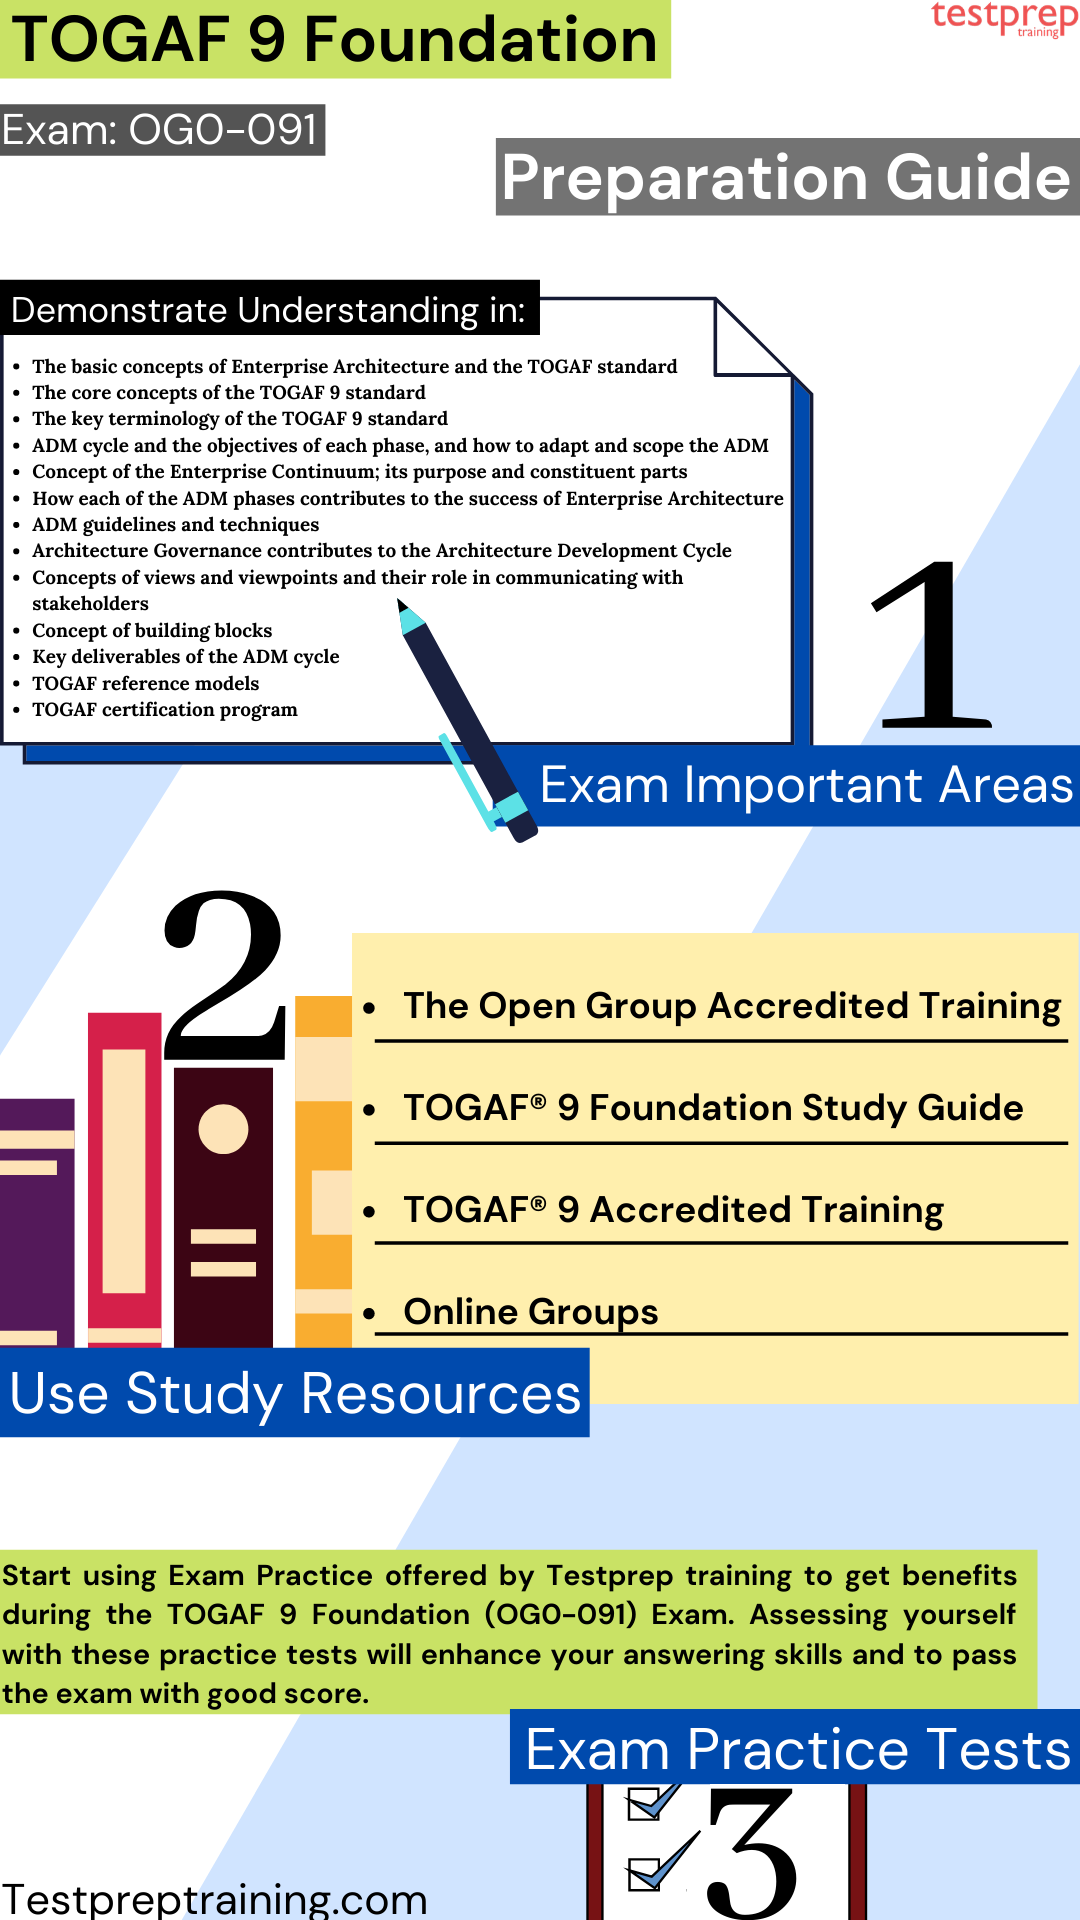 TOGAF 9 Foundation (OG0-091) exam Study Guide